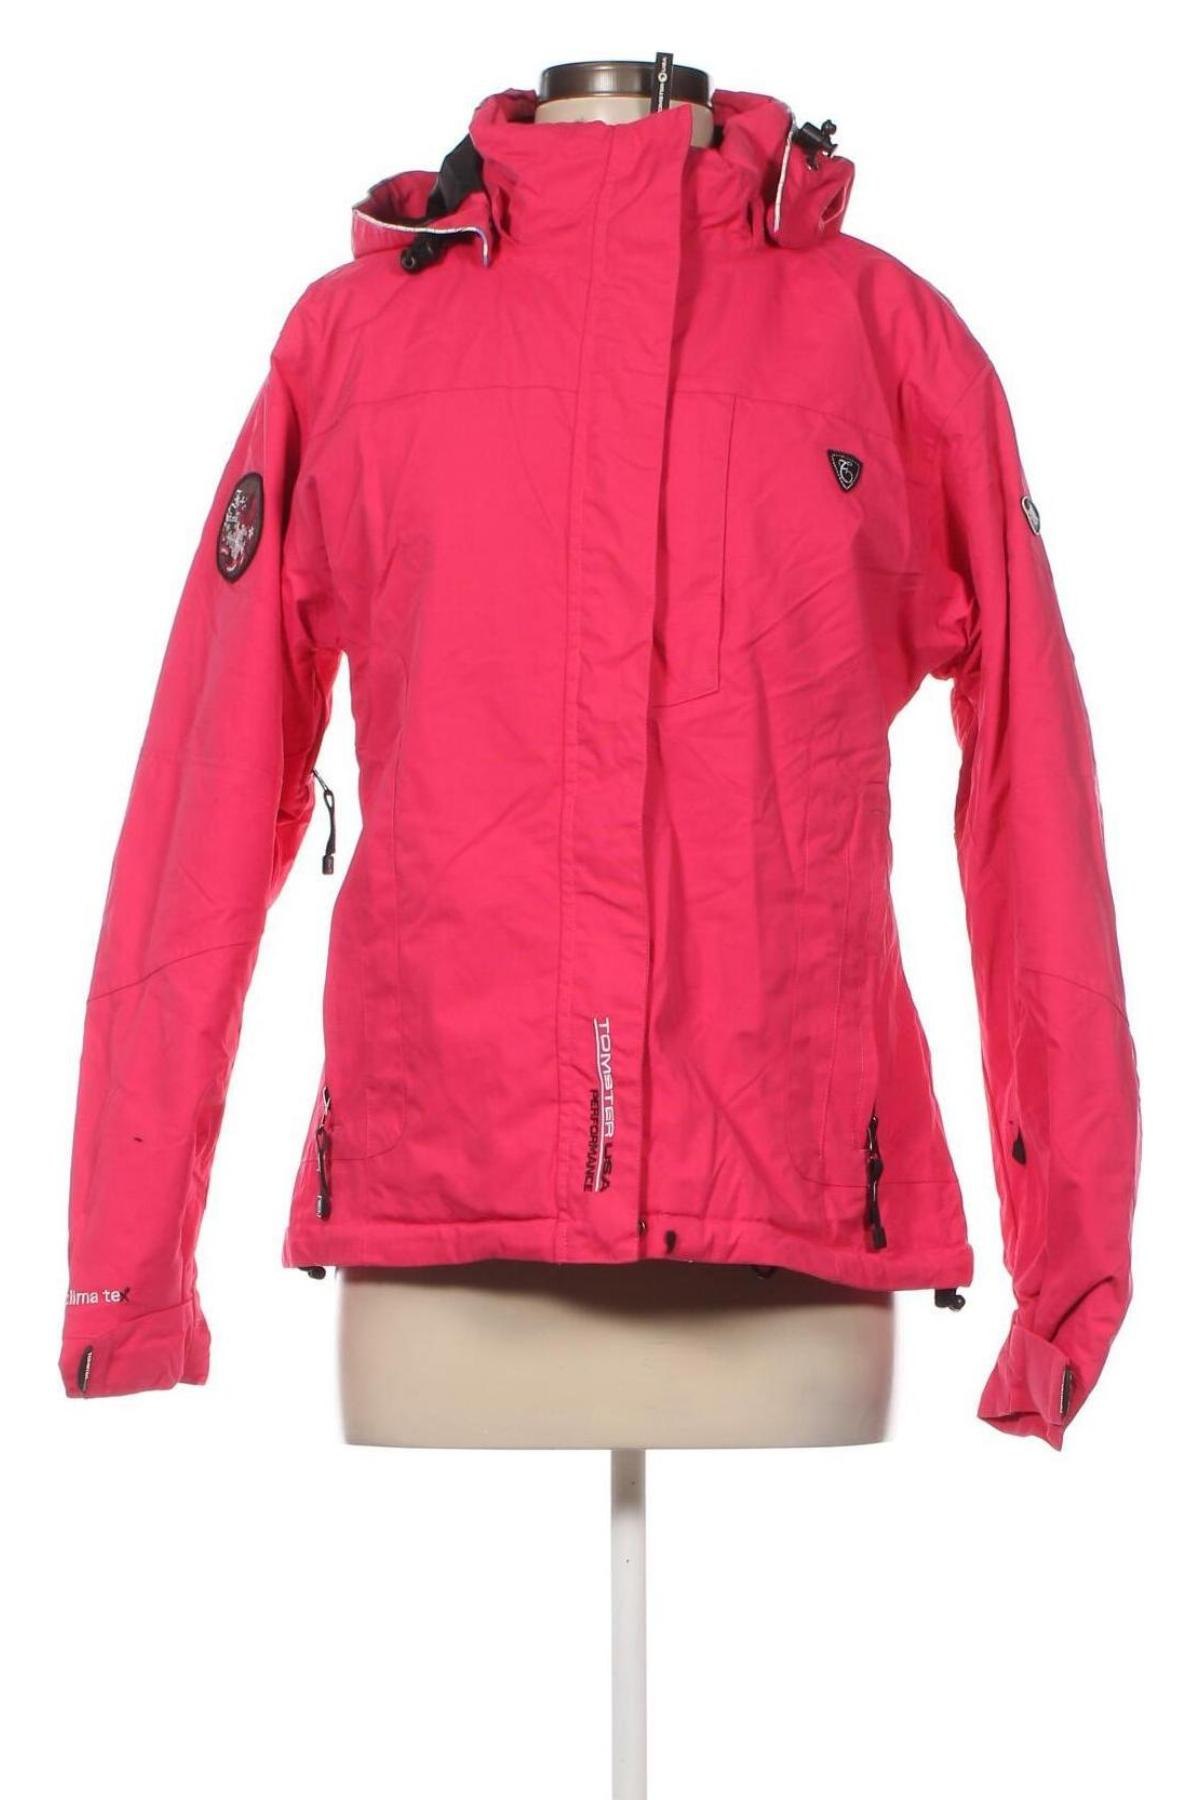 Γυναίκειο μπουφάν για χειμερινά σπορ Tomster USA, Μέγεθος M, Χρώμα Ρόζ , Τιμή 21,38 €